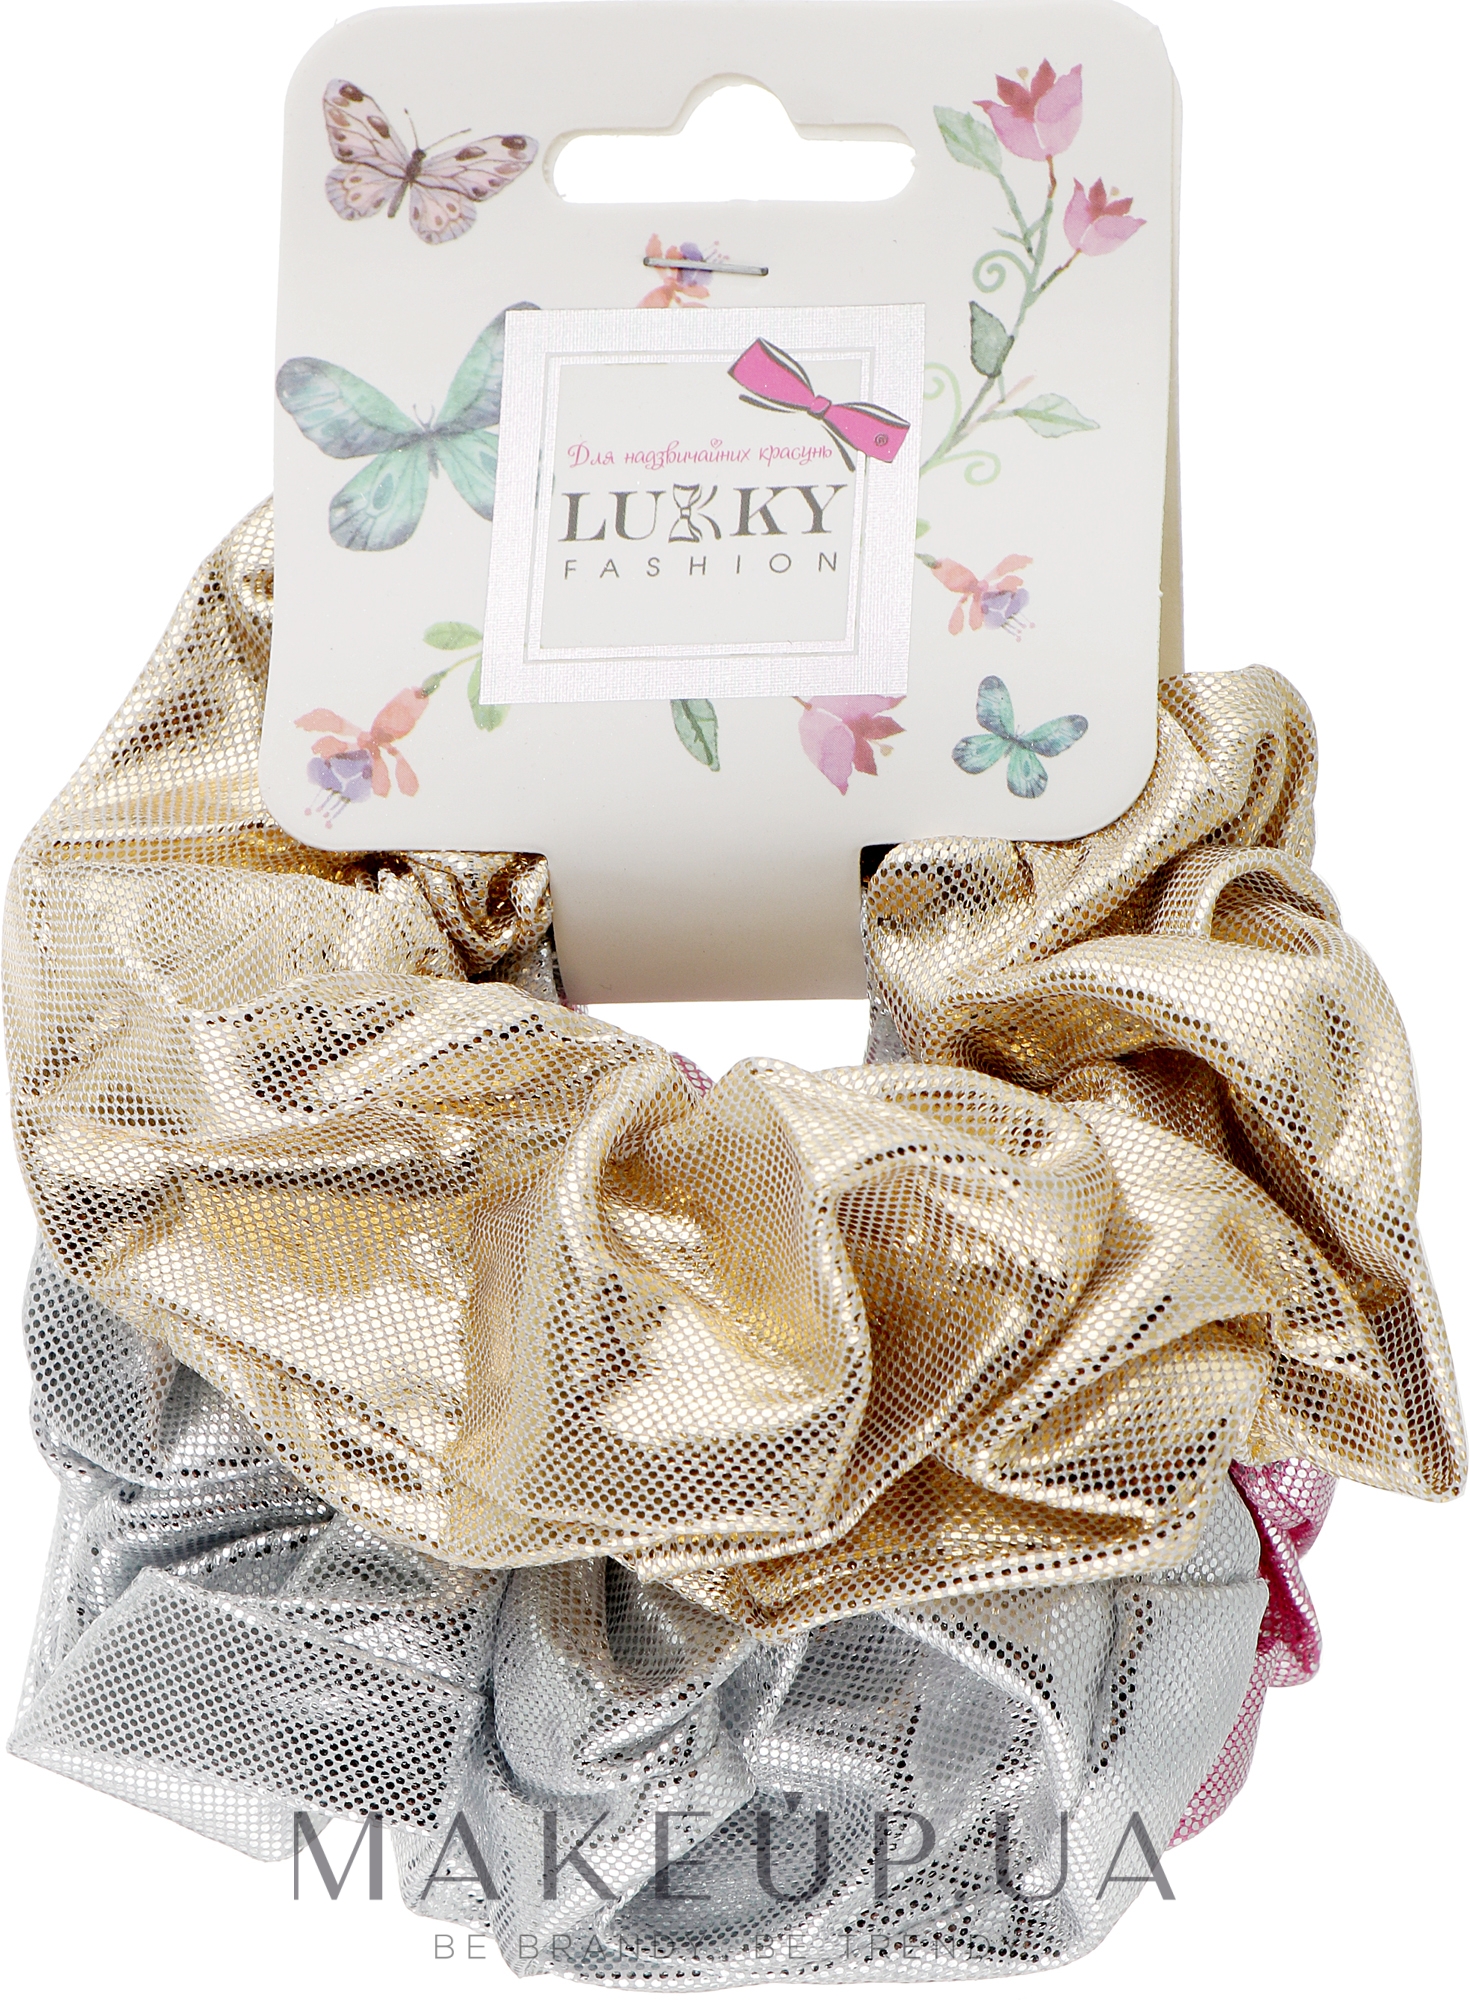 Резинки для волос текстильные блестящие, 3 шт, золотистая, серебристая, розовая - Lukky Fashion — фото 3шт